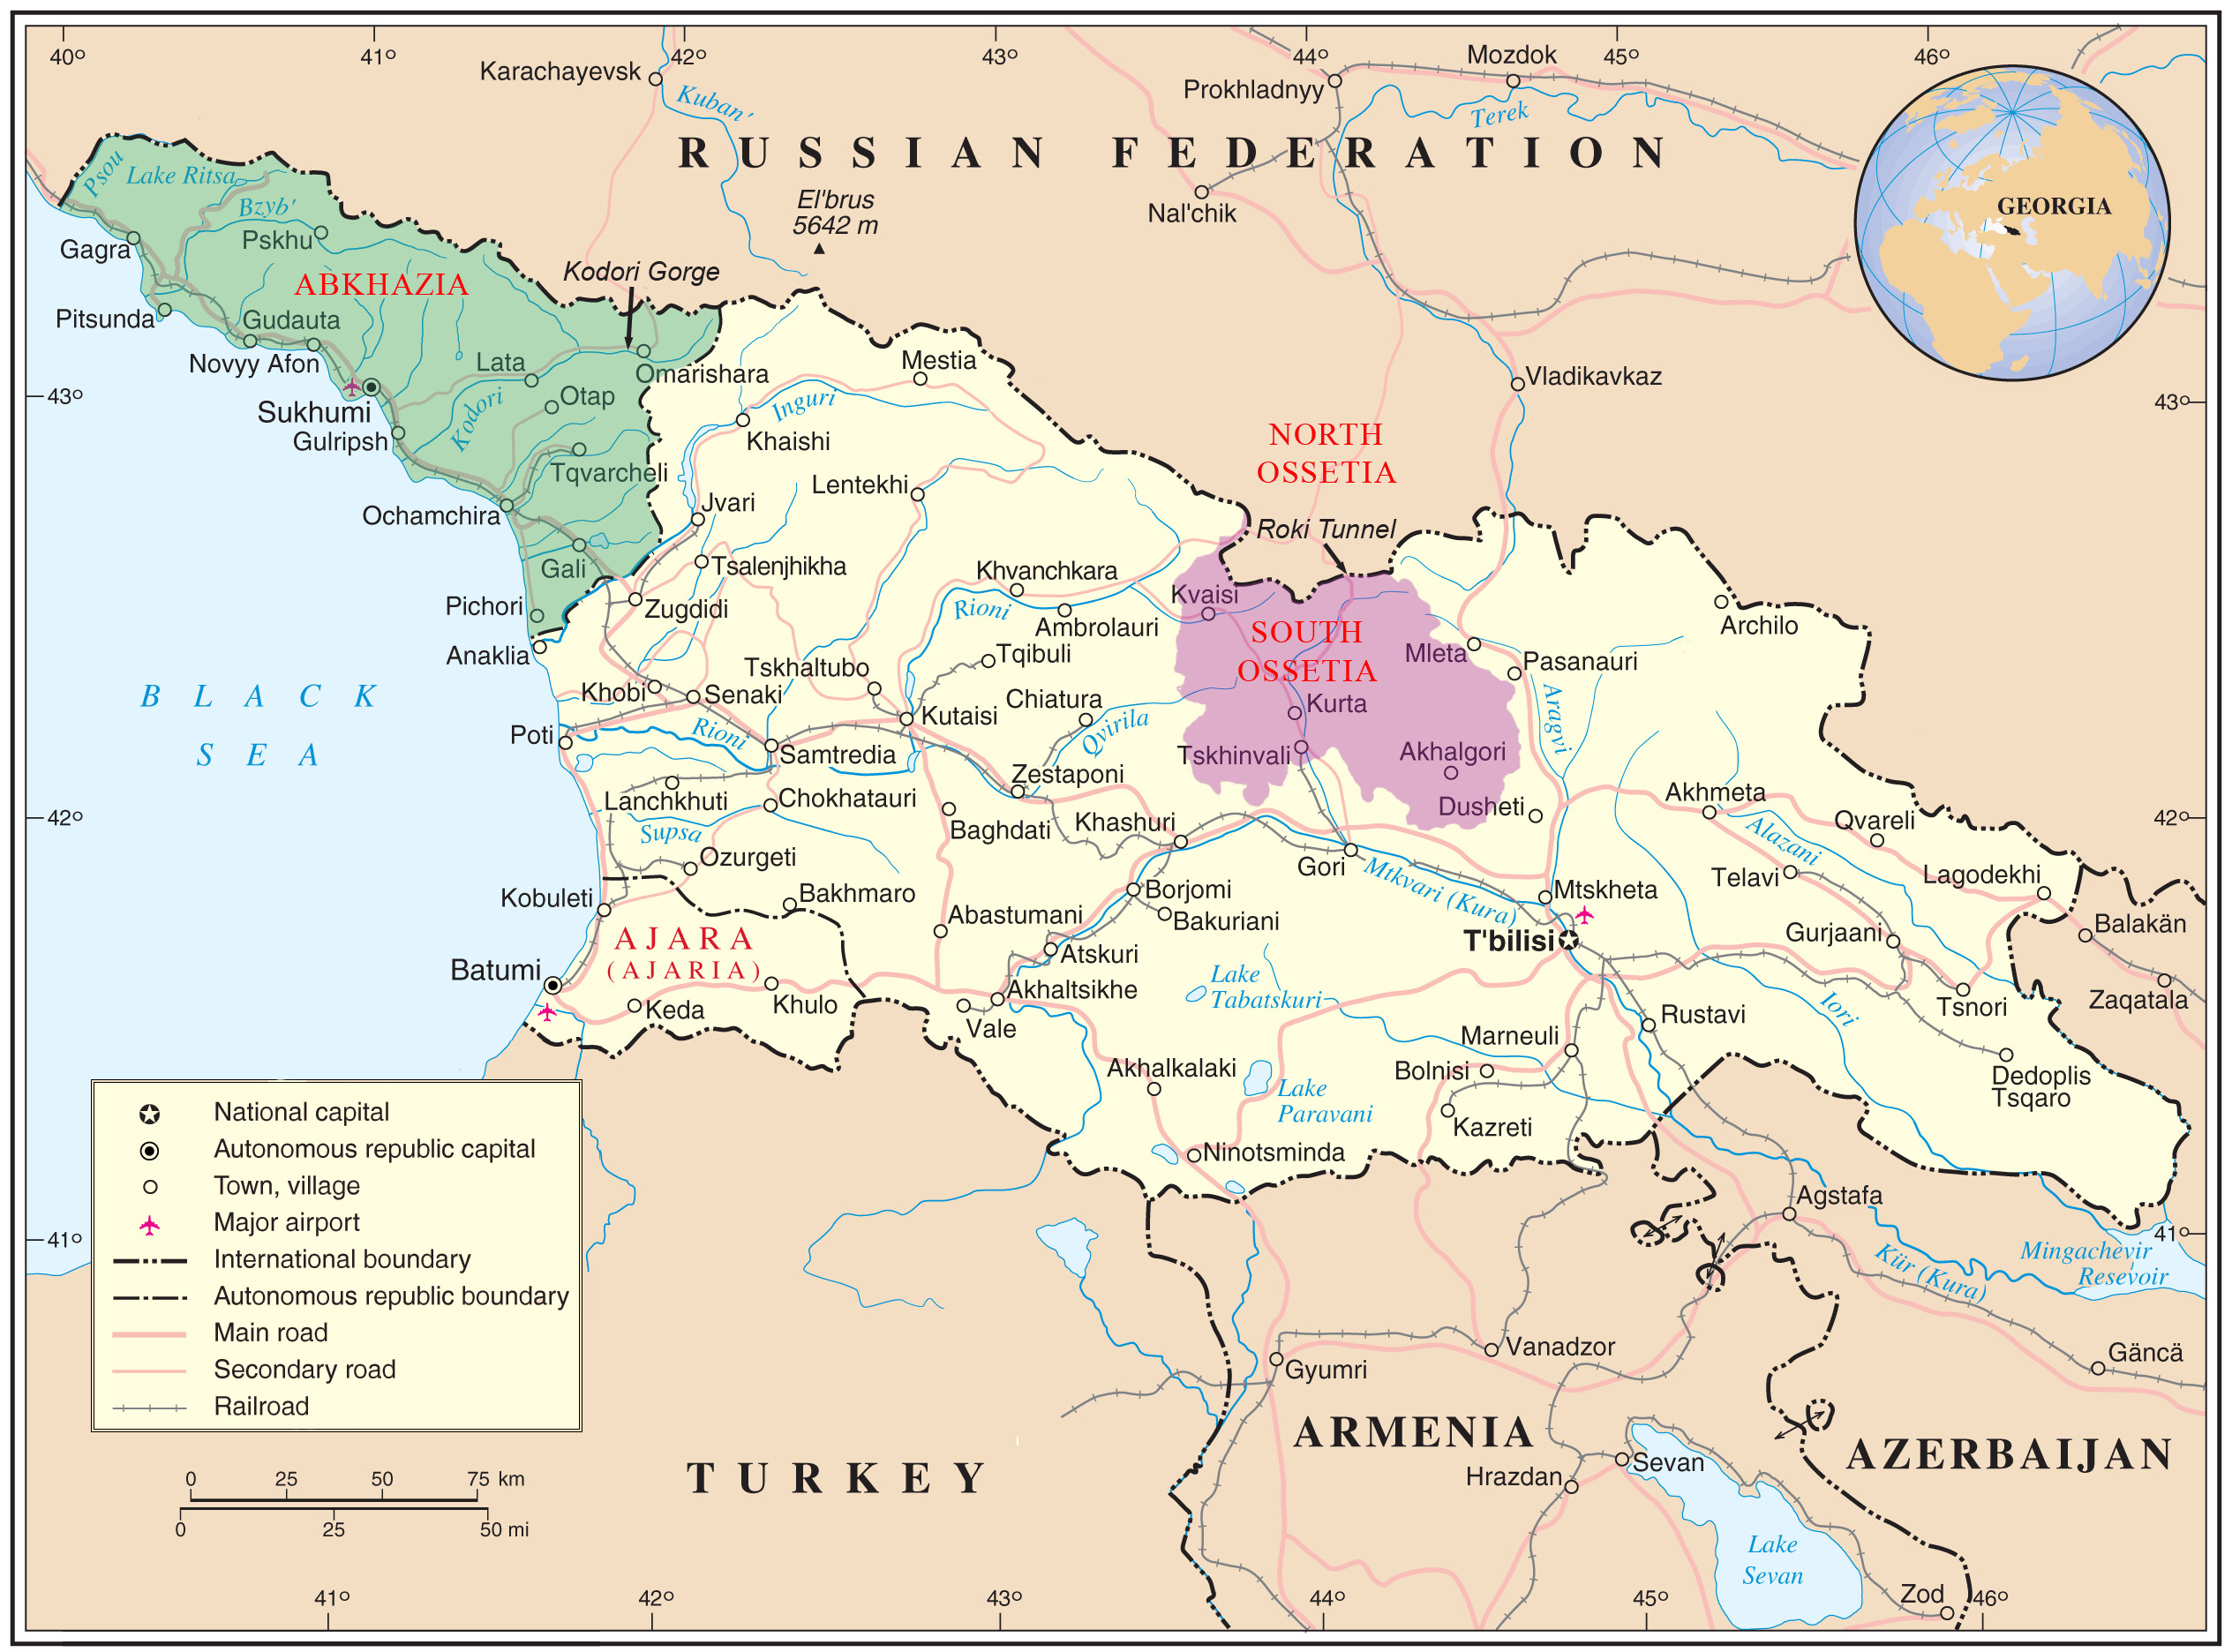 Mappa della Georgia; sono evidenziate le repubbliche autonome di Abkhazia e Adjaria (indipendenti di fatto), e la regione autonoma dell'Ossezia del sud.